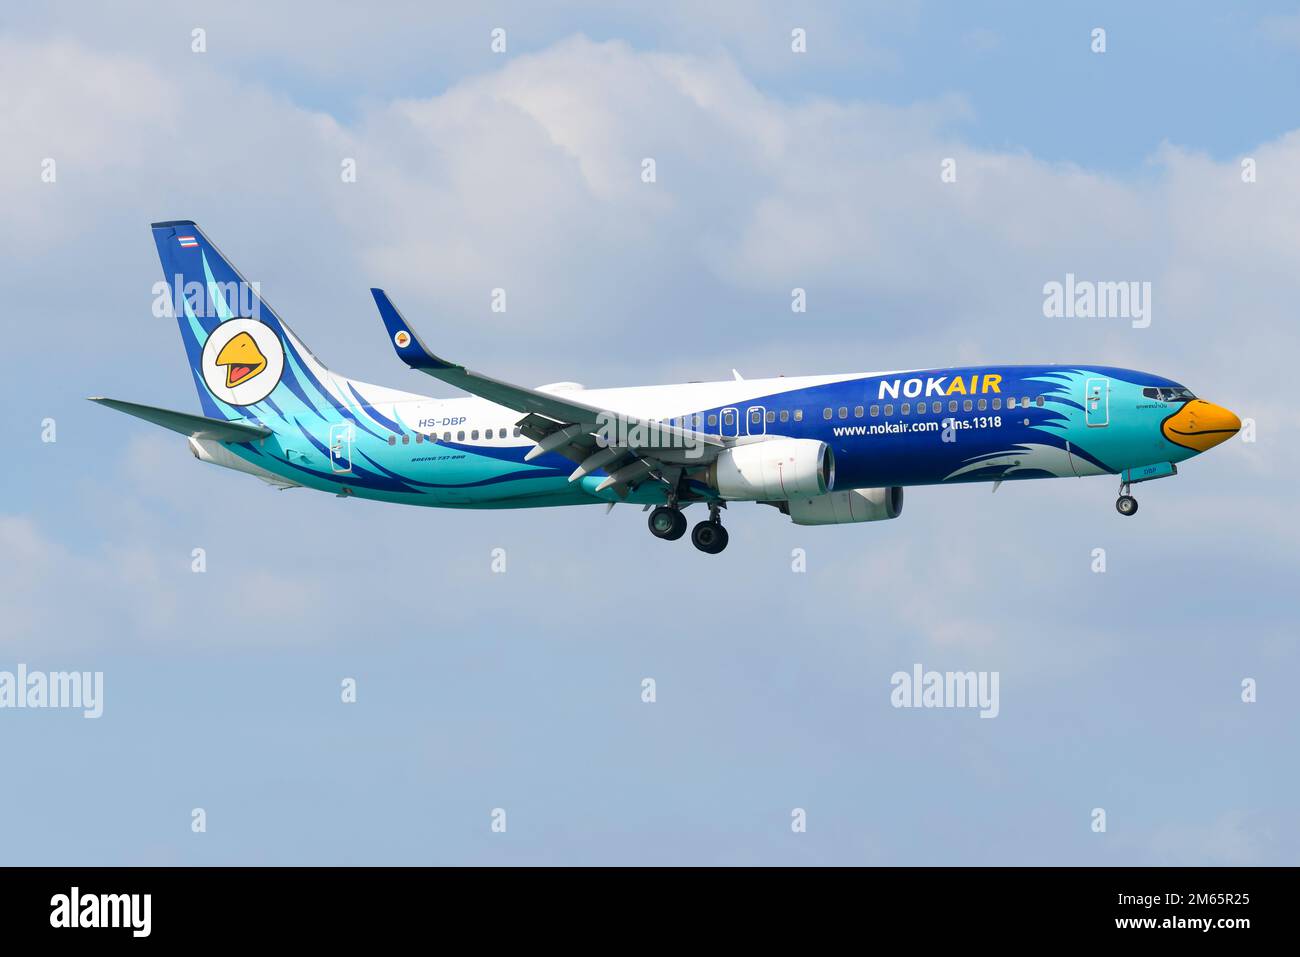 Nok Air Boeing 737 aircraft flying. Airplane 737-800 of NokAir Thailand (Nok Air Thailand). Stock Photo